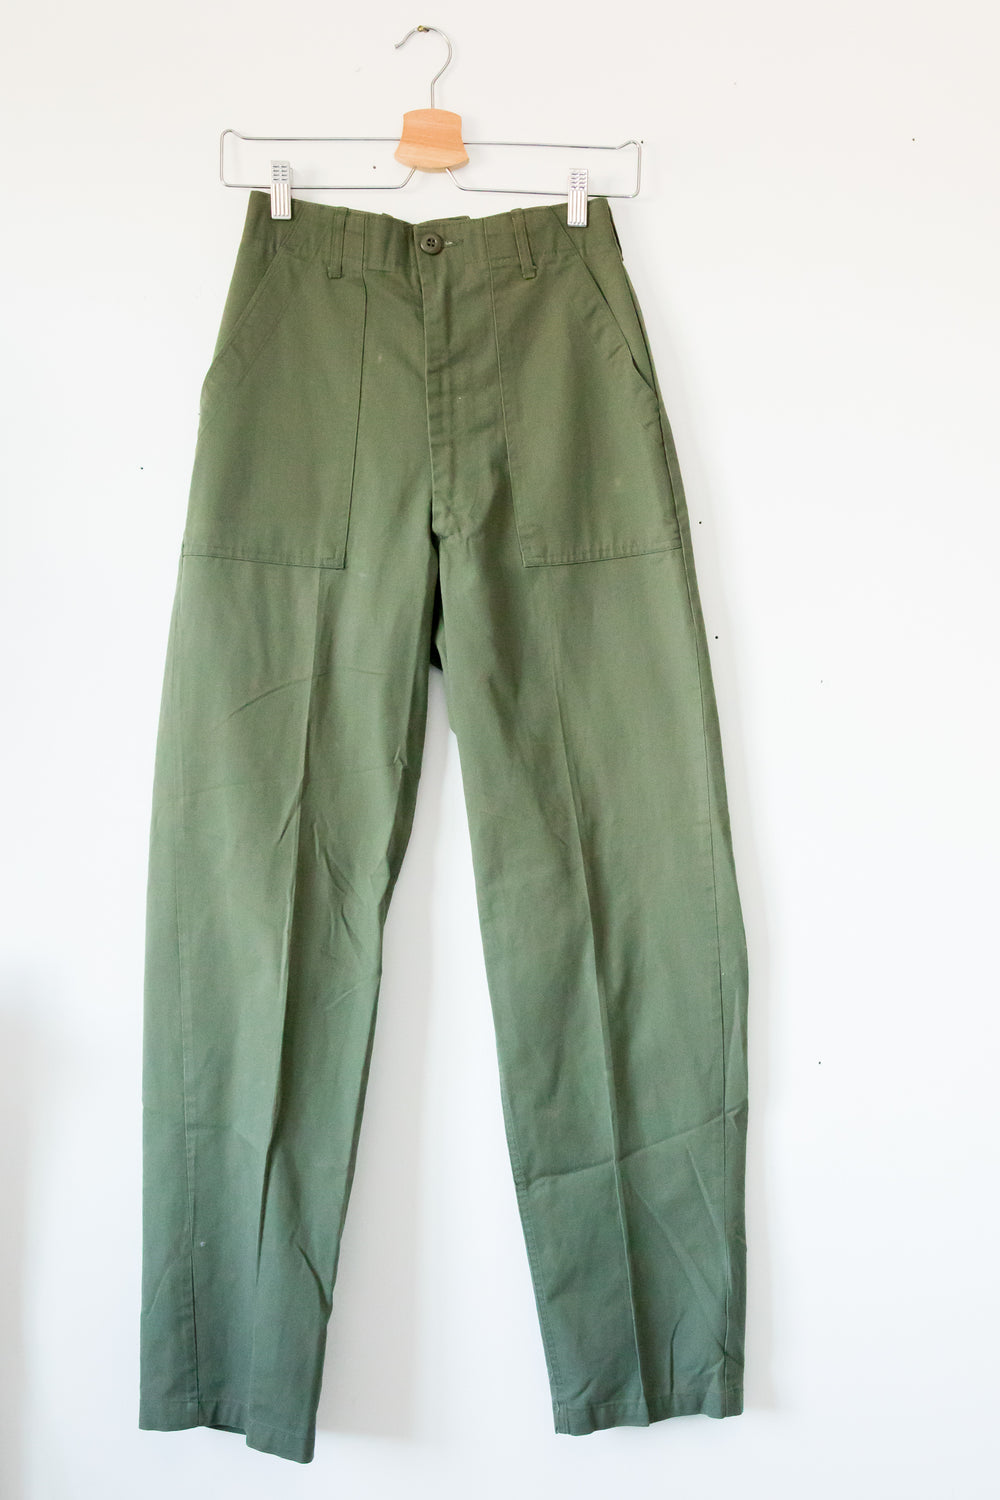 Vintage Army Pant 1